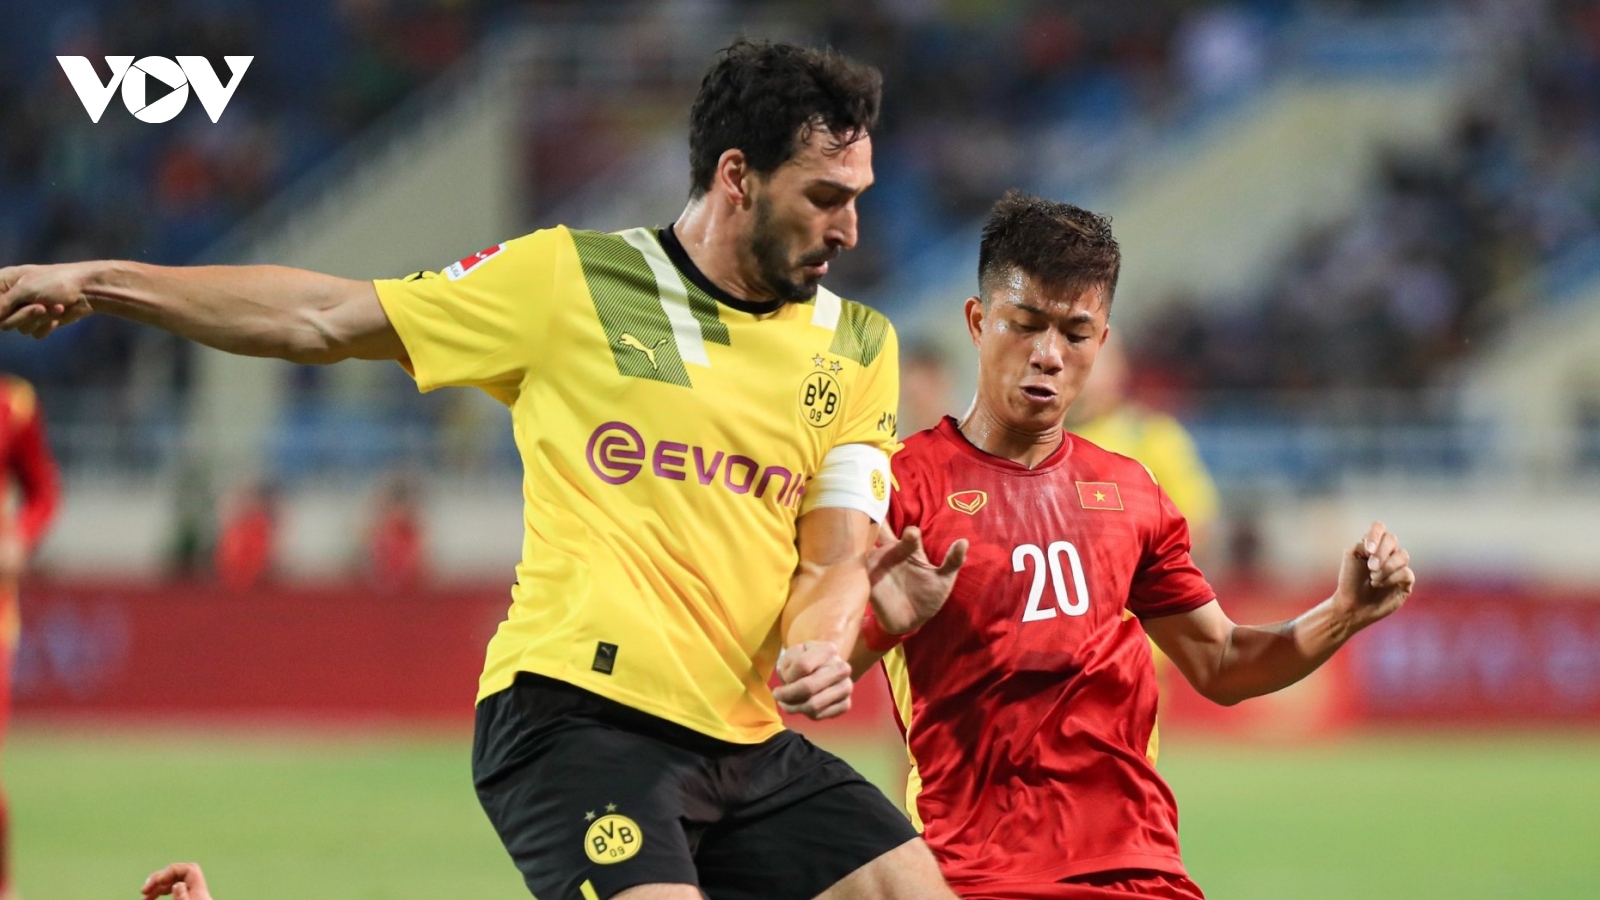 Tiến Linh & Tuấn Hải ghi bàn, ĐT Việt Nam xuất sắc đánh bại Dortmund